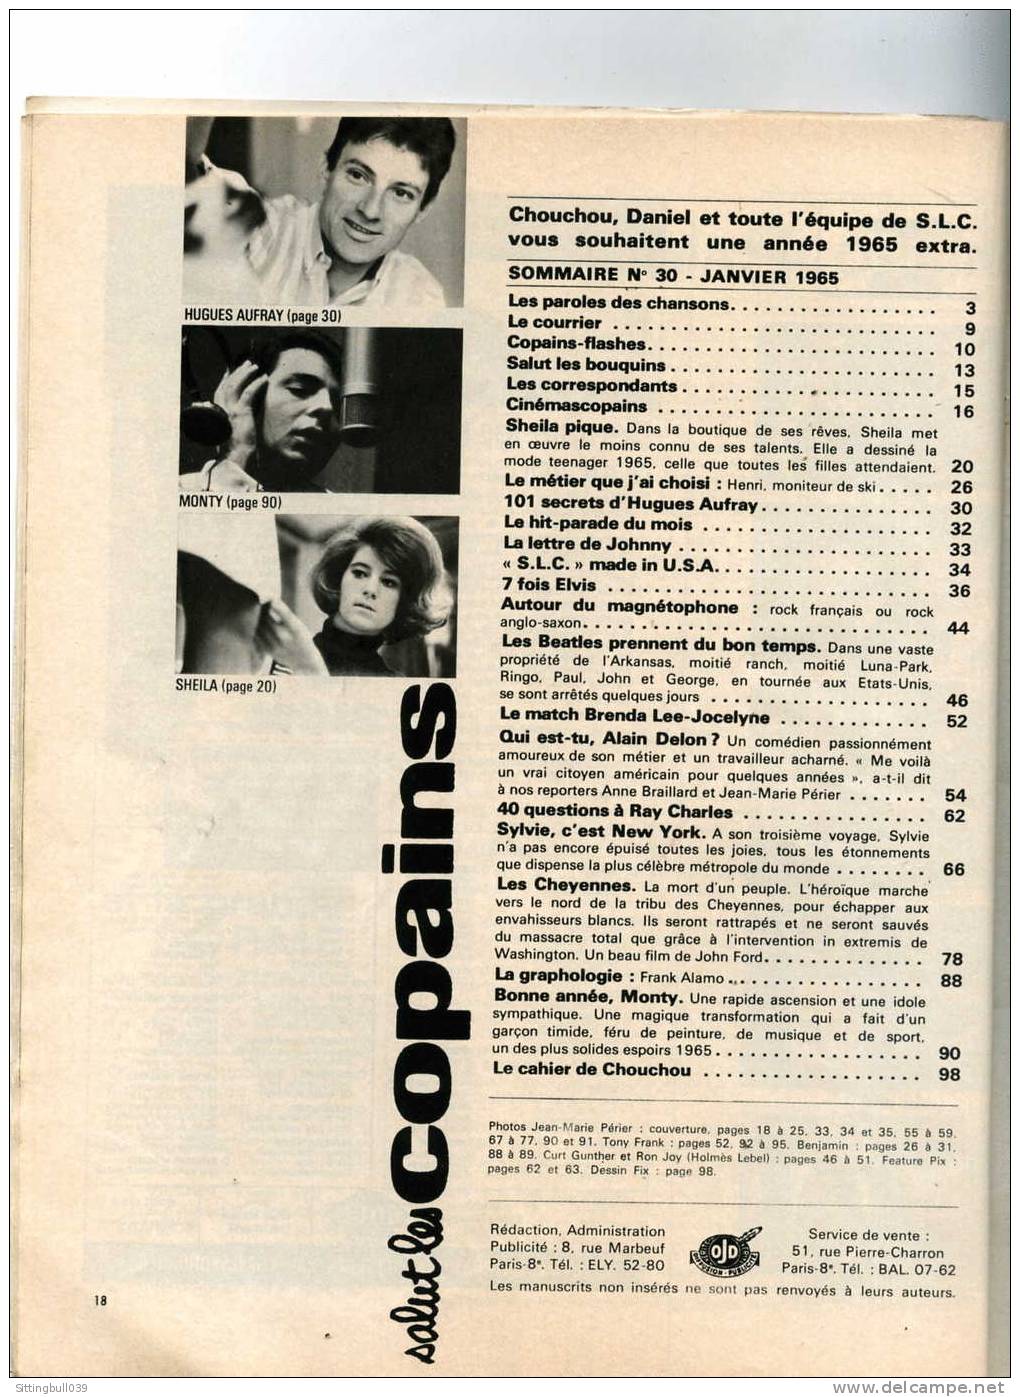 SALUT LES COPAINS N° 30 (SLC) JANV. 1965. SYLVIE VARTAN, LES BEATLES, ELVIS, ALAIN DELON, Etc. SUPERBES PHOTOS. - Musik